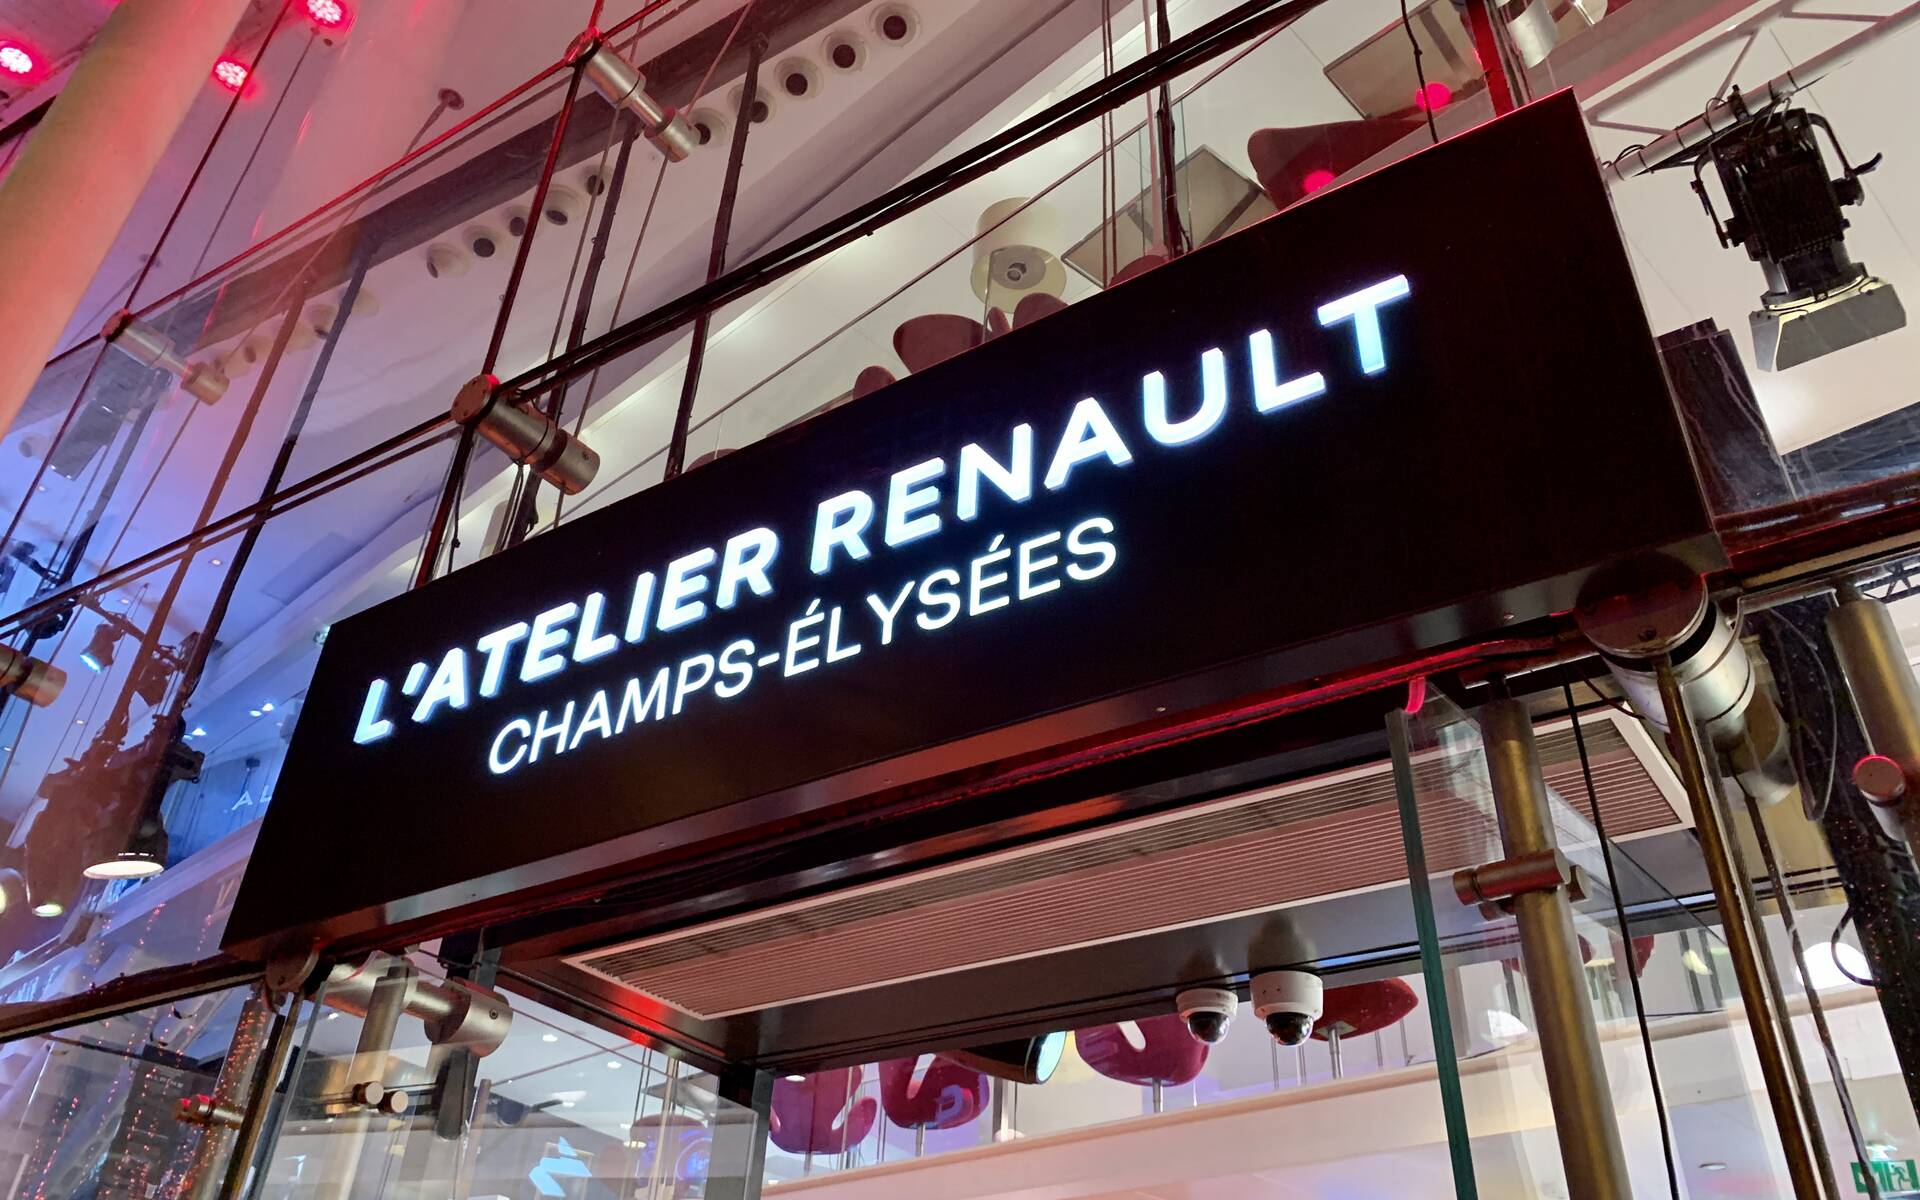 Les 60 ans de la Renault 4 sur les Champs-Élysées (Photos) 504878-photos-les-60-ans-de-la-renault-4-sur-les-champs-elysees